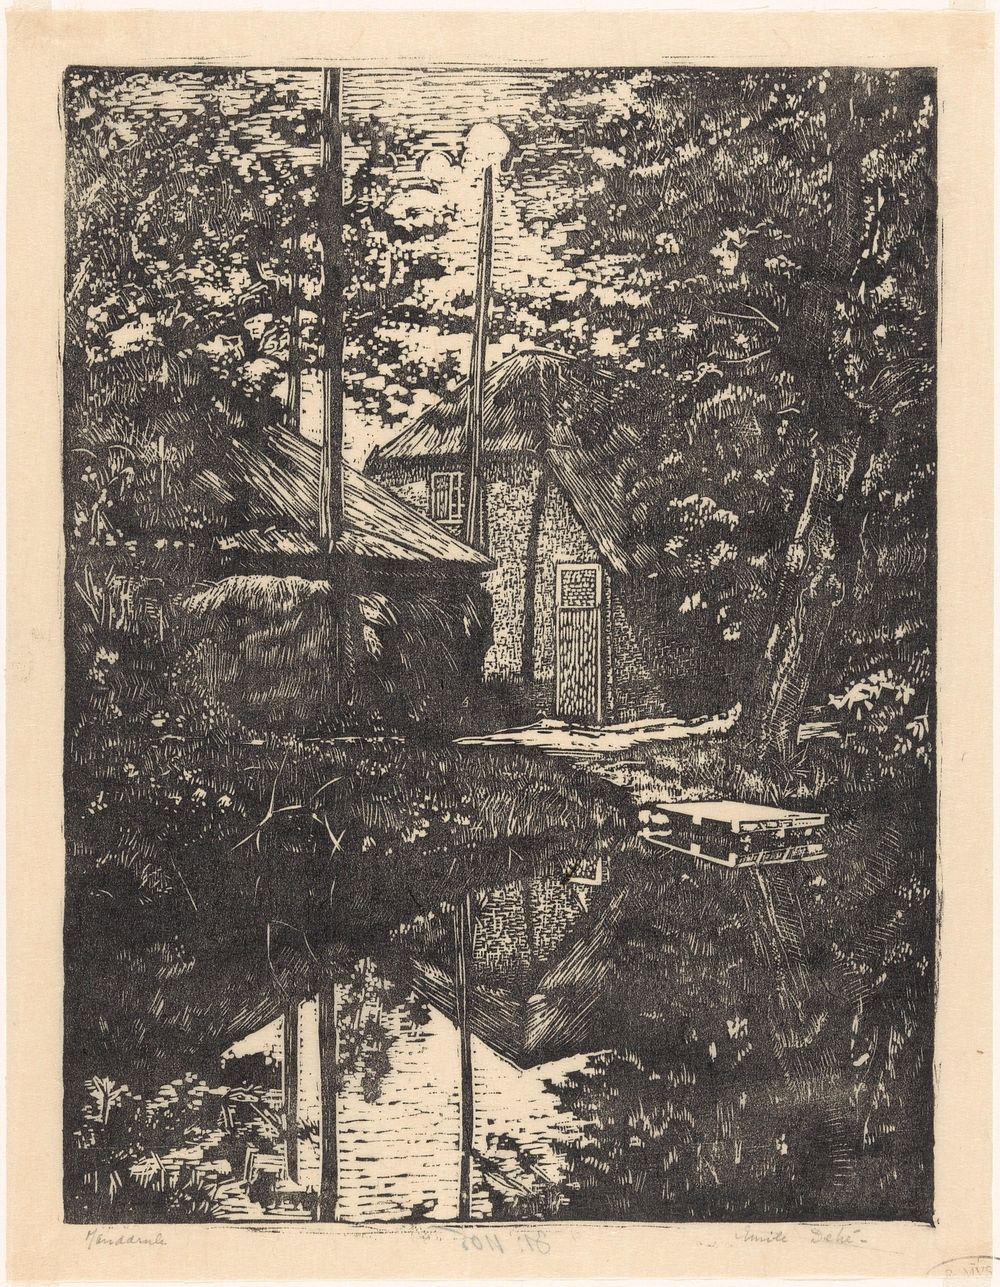 Boerderij en hooischuur aan het water (1896 - 1931) by Emilius Wilhelmus Dehé and Emilius Wilhelmus Dehé